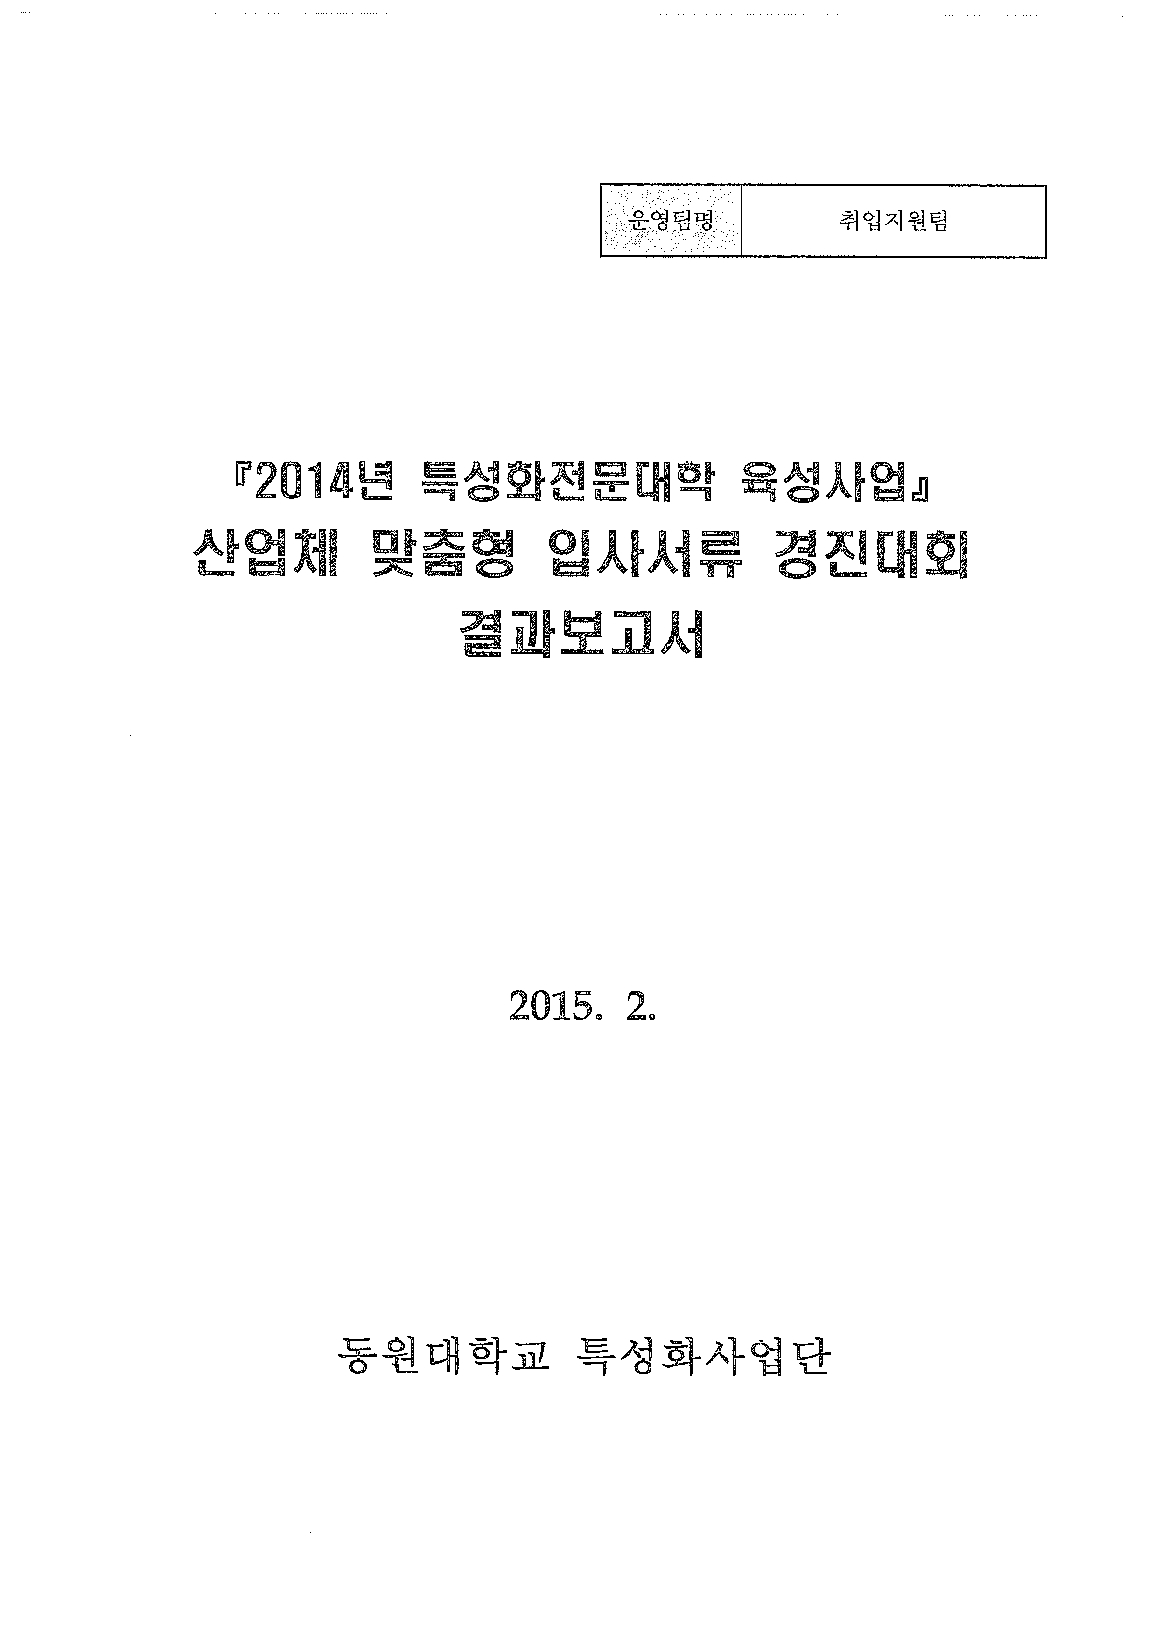 2014년특성화전문대학육성사업산업체 맞춤형 입사서류 경진대회 결과보고서